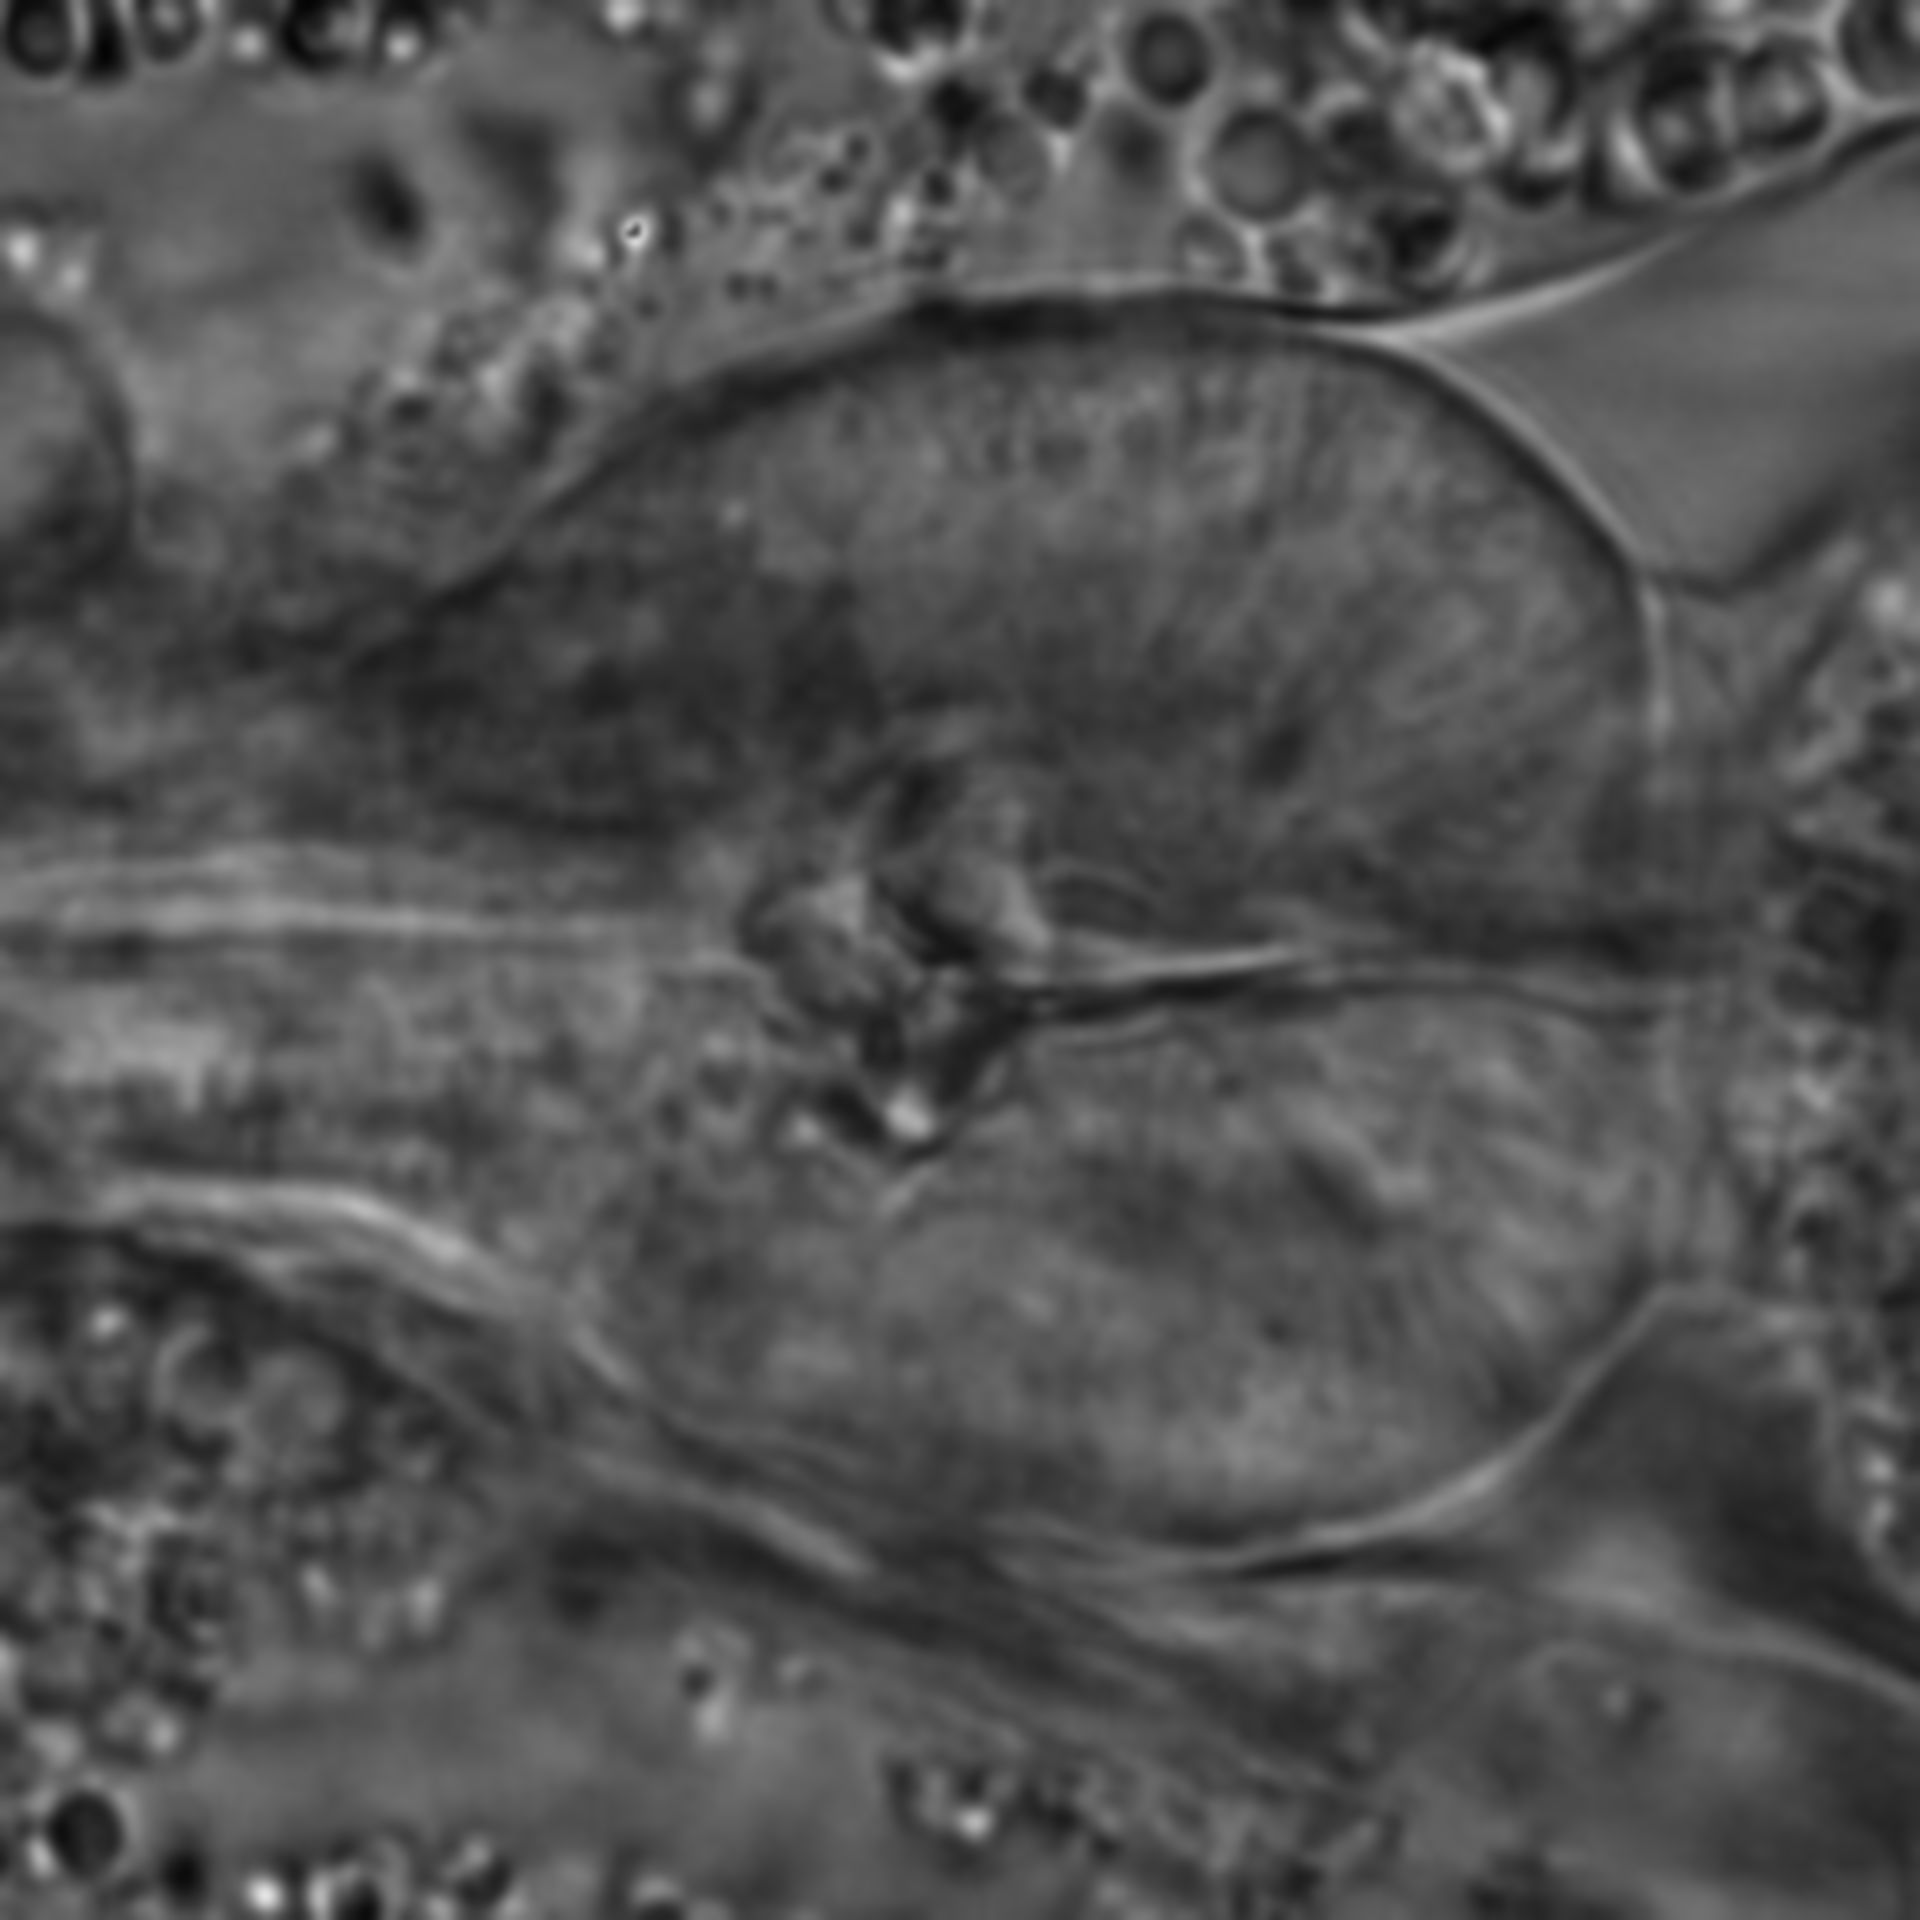 Caenorhabditis elegans - CIL:1717